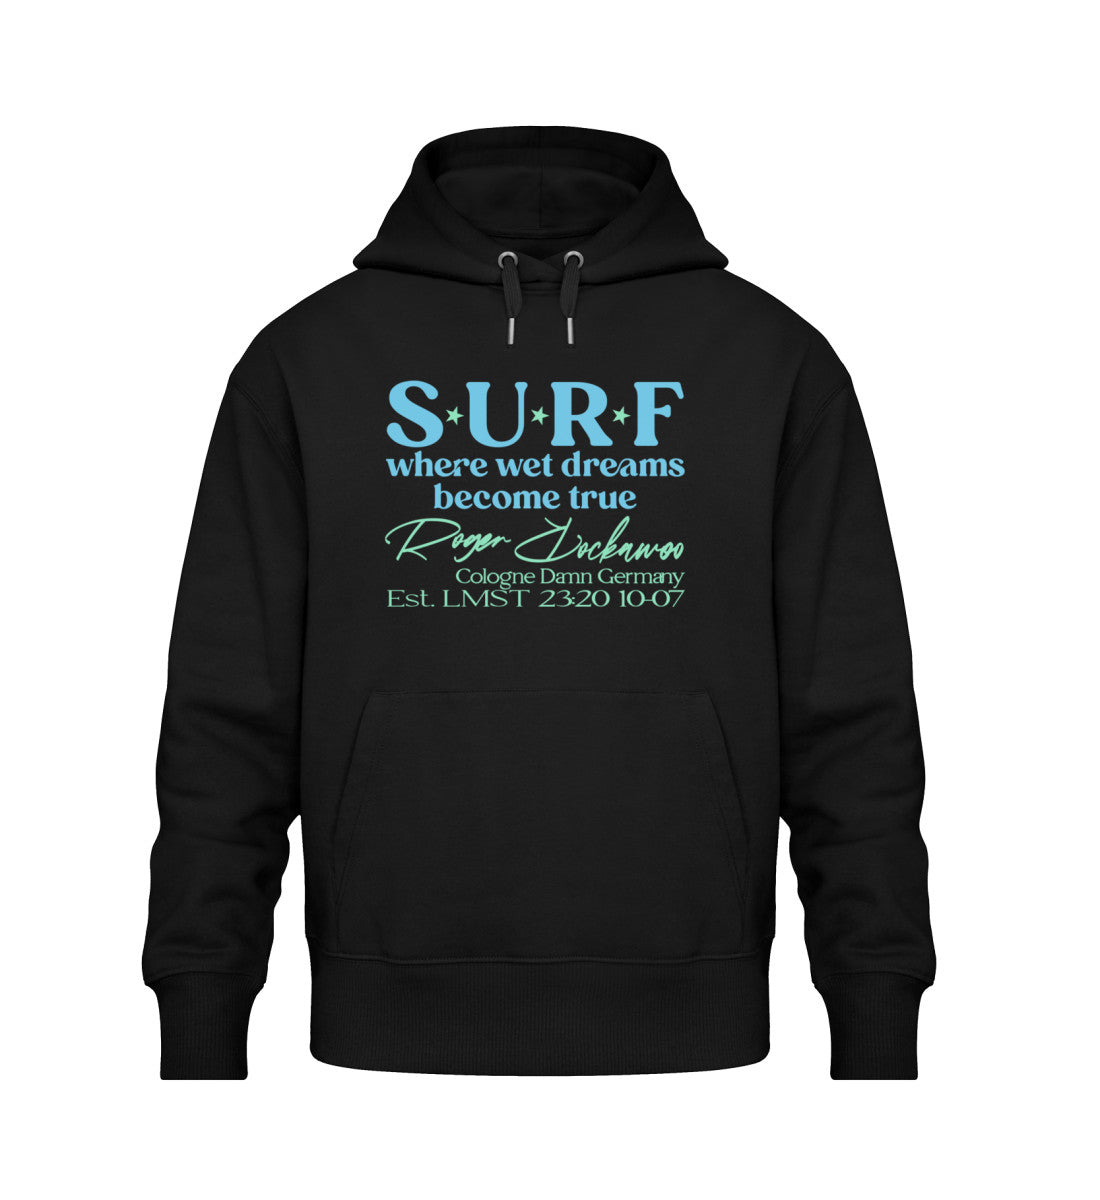 Schwarzer Hoodie in Oversize Fit mit dem Design der Surf where wet dreams become true Kollektion von Roger Rockawoo Clothing